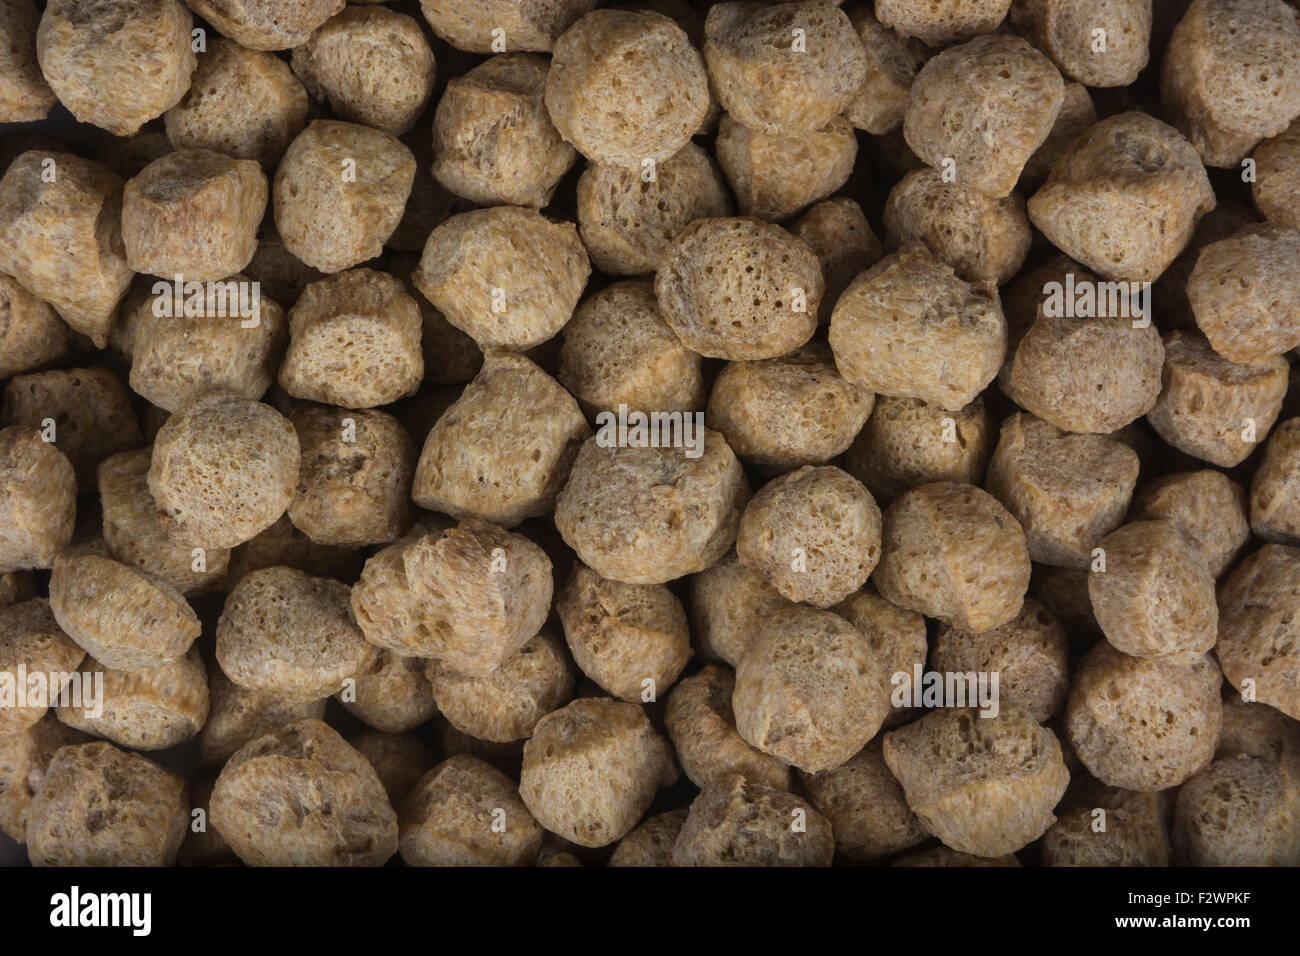 Close-up von getrockneten Soja/Soja Chunks - vegetarisches Essen/Kochen verwendet. Soja jetzt in der Mitte der US-China trade Tarif Krieg. Soja Produkte Konzept Stockfoto